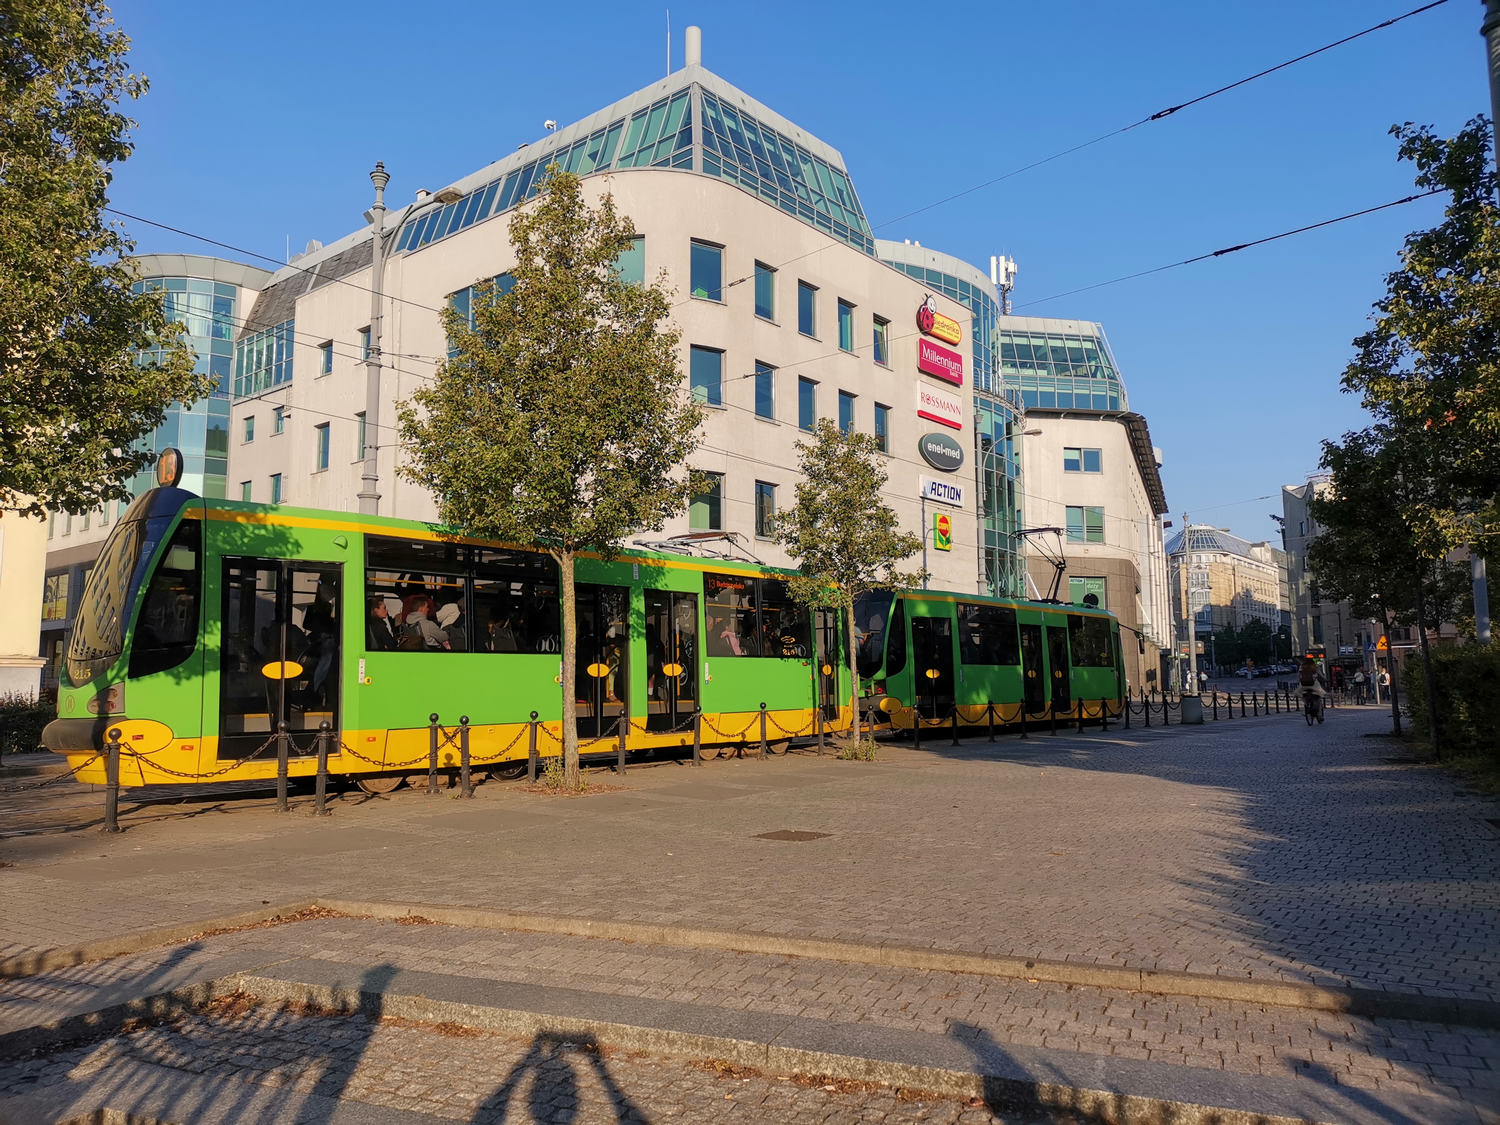 Poznańban a villamosok és a buszok is jellegzetes, zöld-sárga színűek.